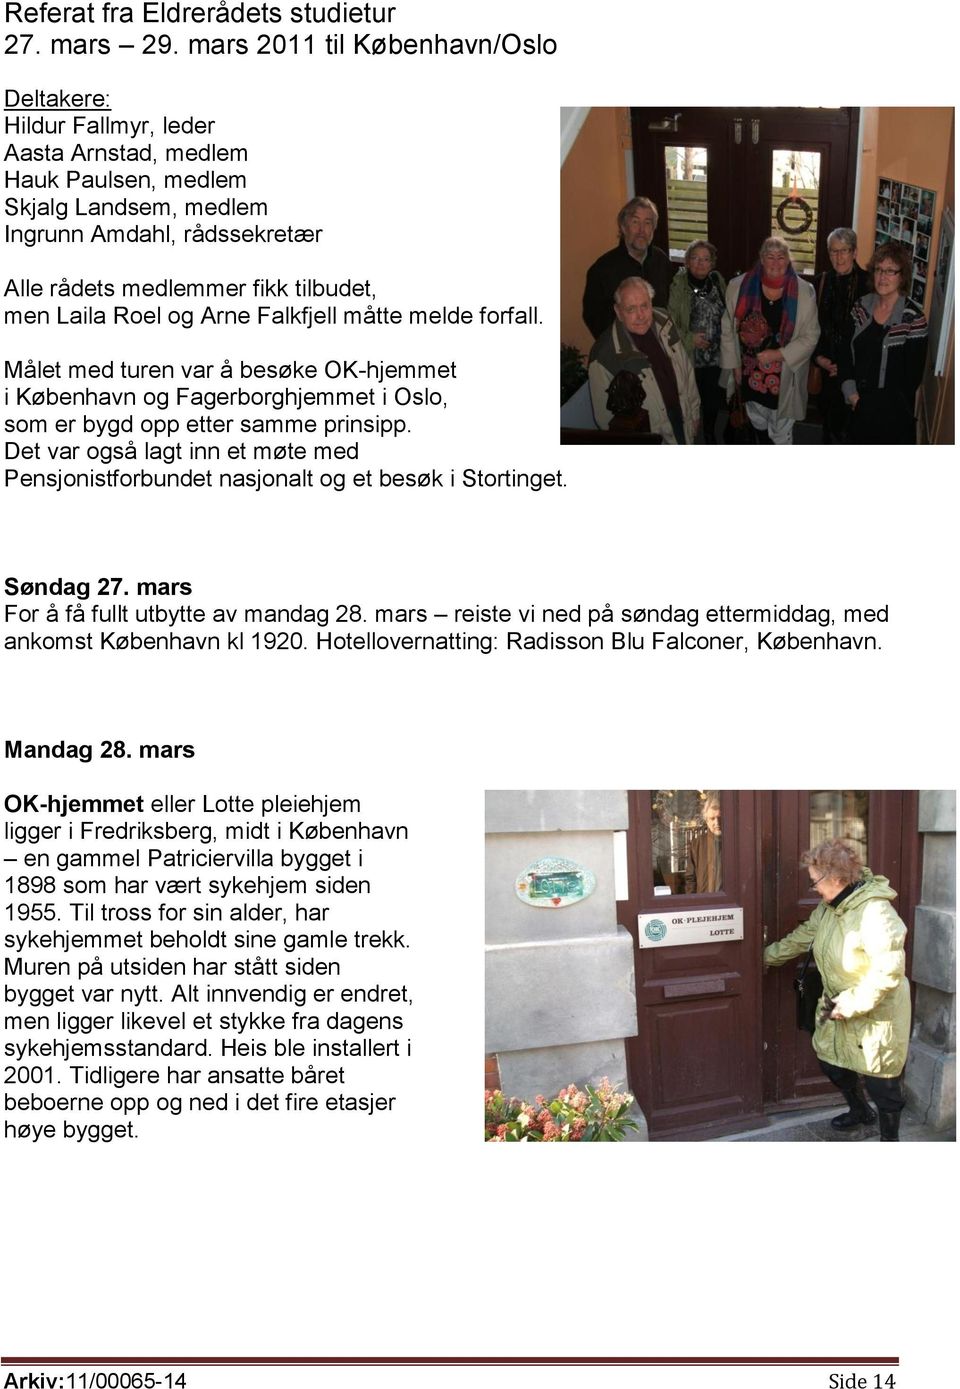 Laila Roel og Arne Falkfjell måtte melde forfall. Målet med turen var å besøke OK-hjemmet i København og Fagerborghjemmet i Oslo, som er bygd opp etter samme prinsipp.